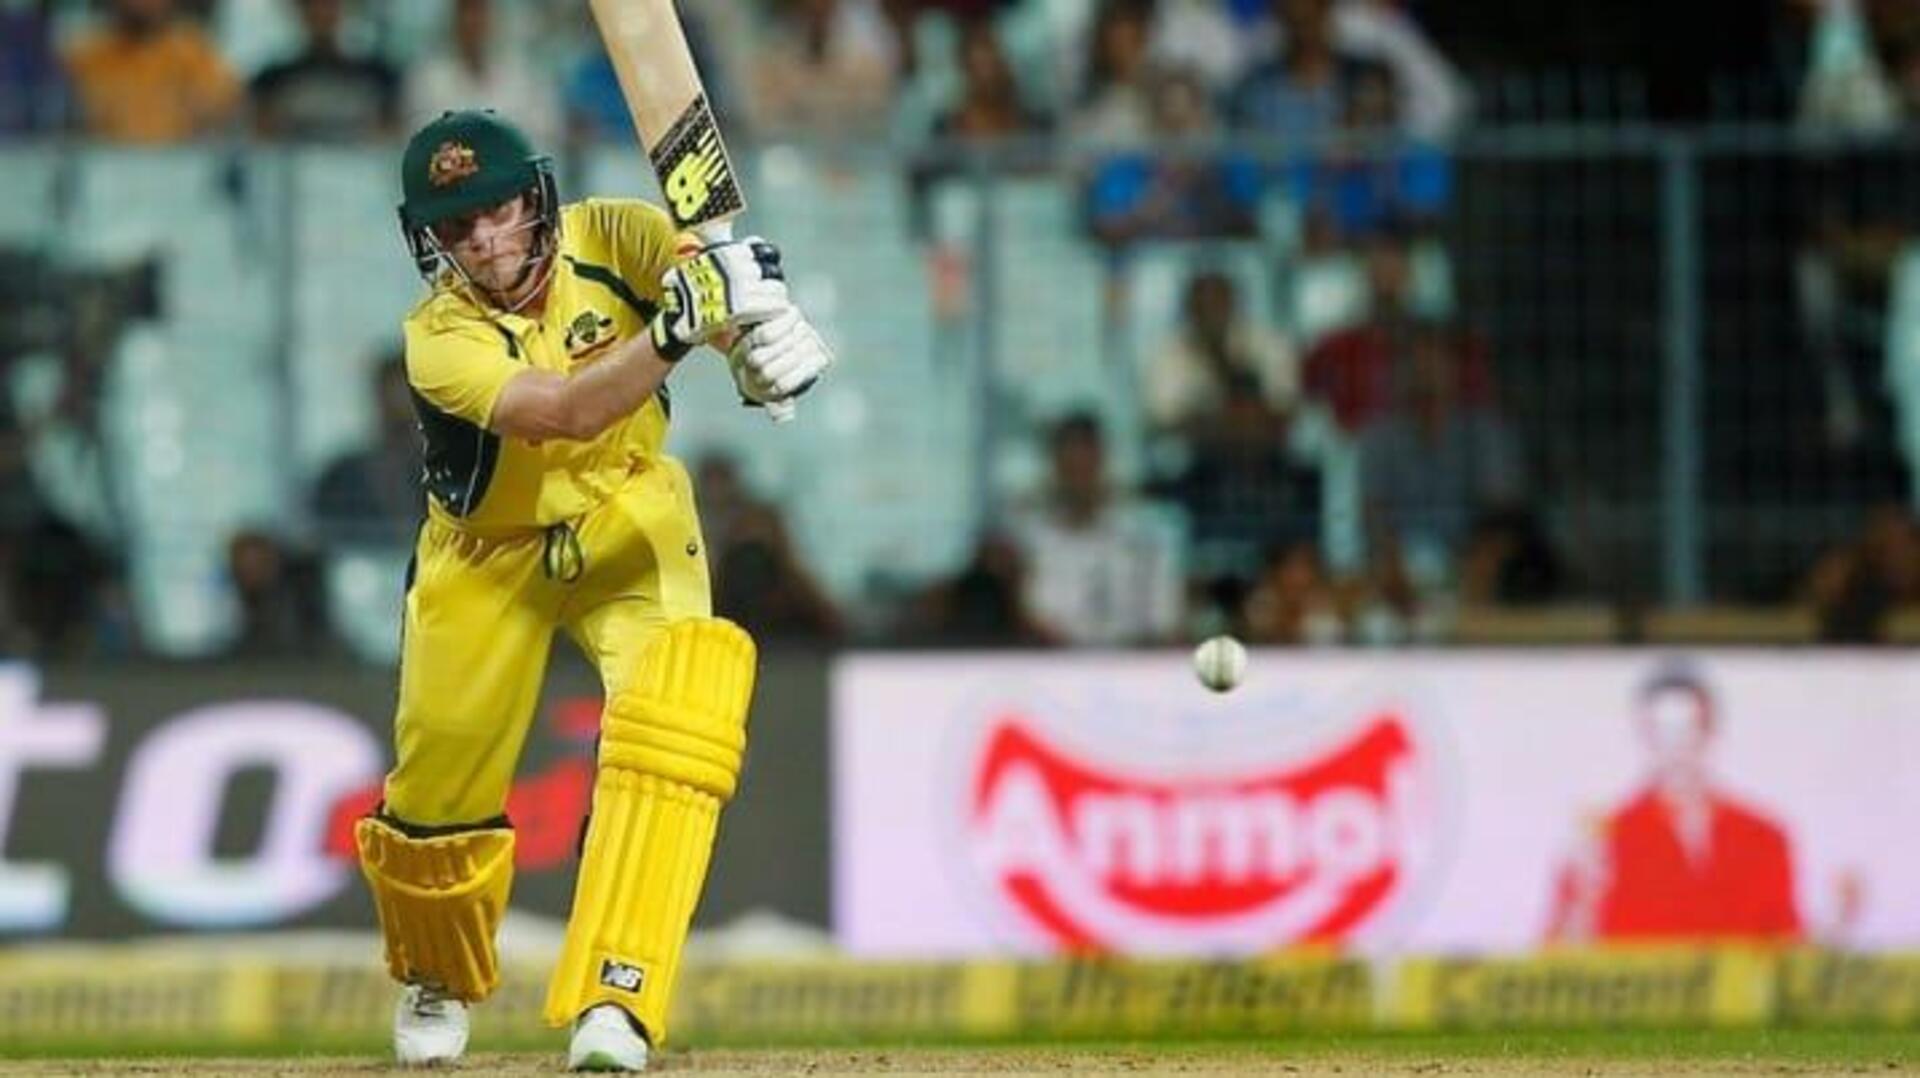 भारत बनाम ऑस्ट्रेलिया: स्टीव स्मिथ ने लगाया टी-20 अंतरराष्ट्रीय करियर का 5वां अर्धशतक, जानिए आंकड़े